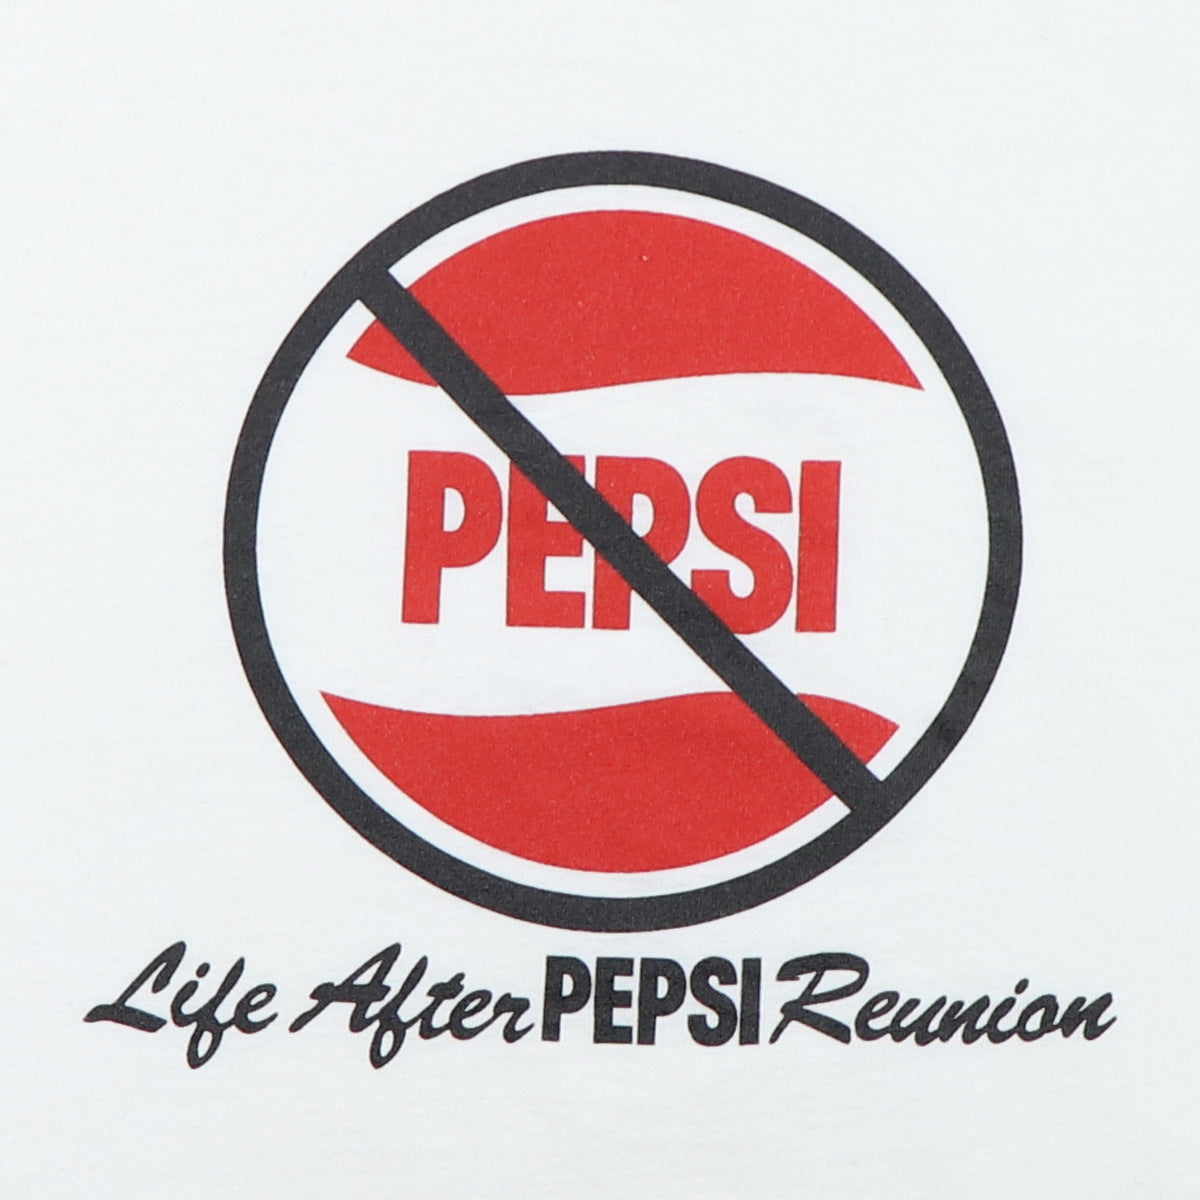 1980s Pepsi Life After Pepsi Reunion Shirt